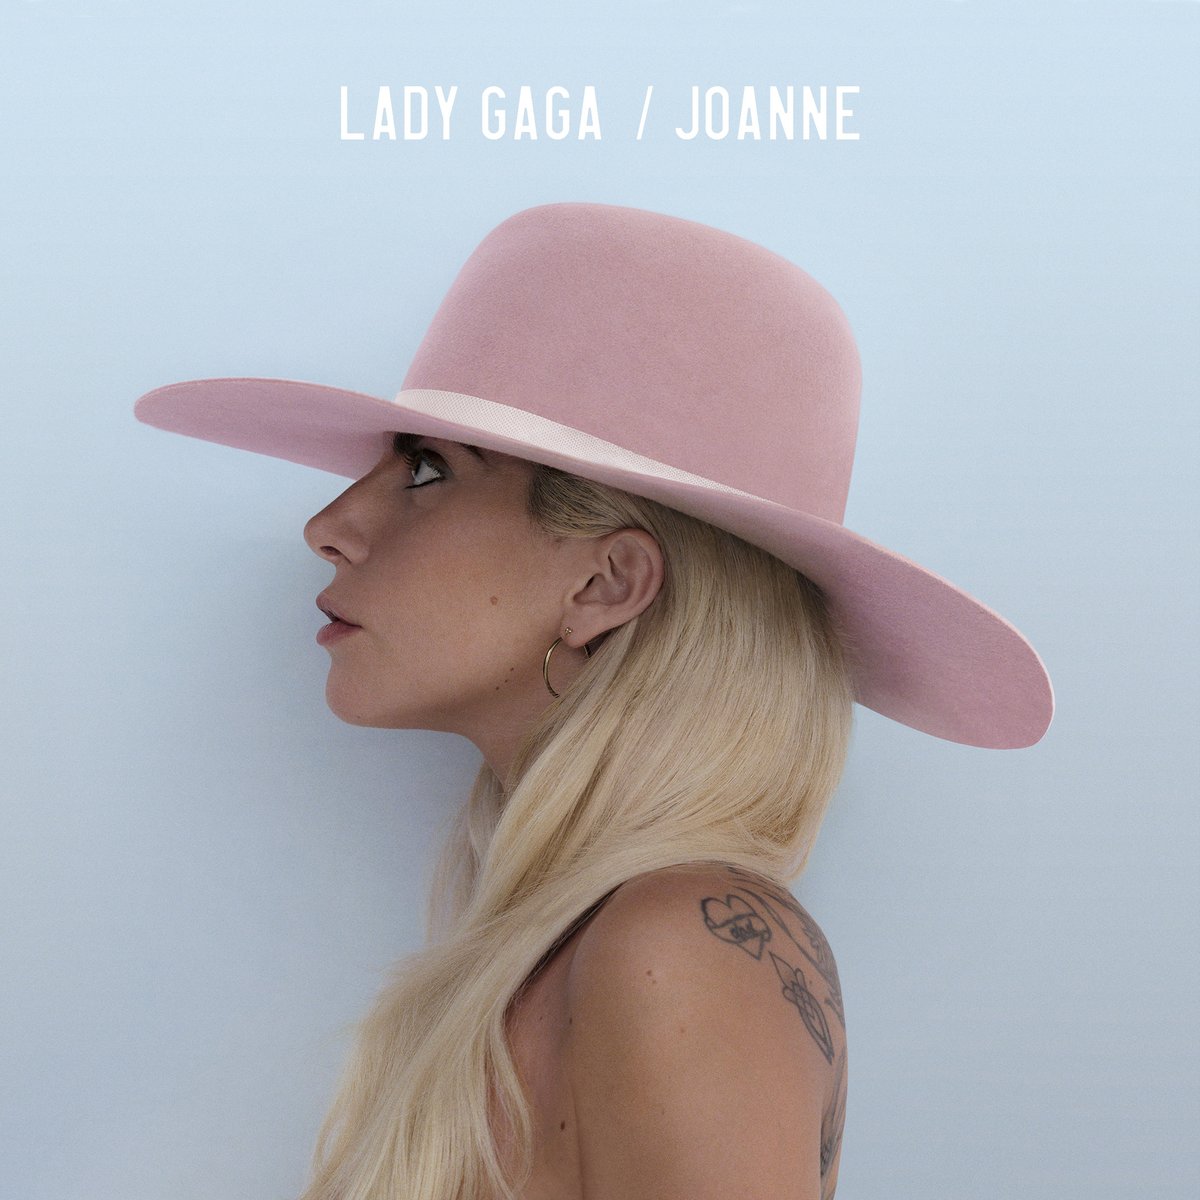 Review | A nova e ótima fase de Lady Gaga em seu mais novo álbum “Joanne”